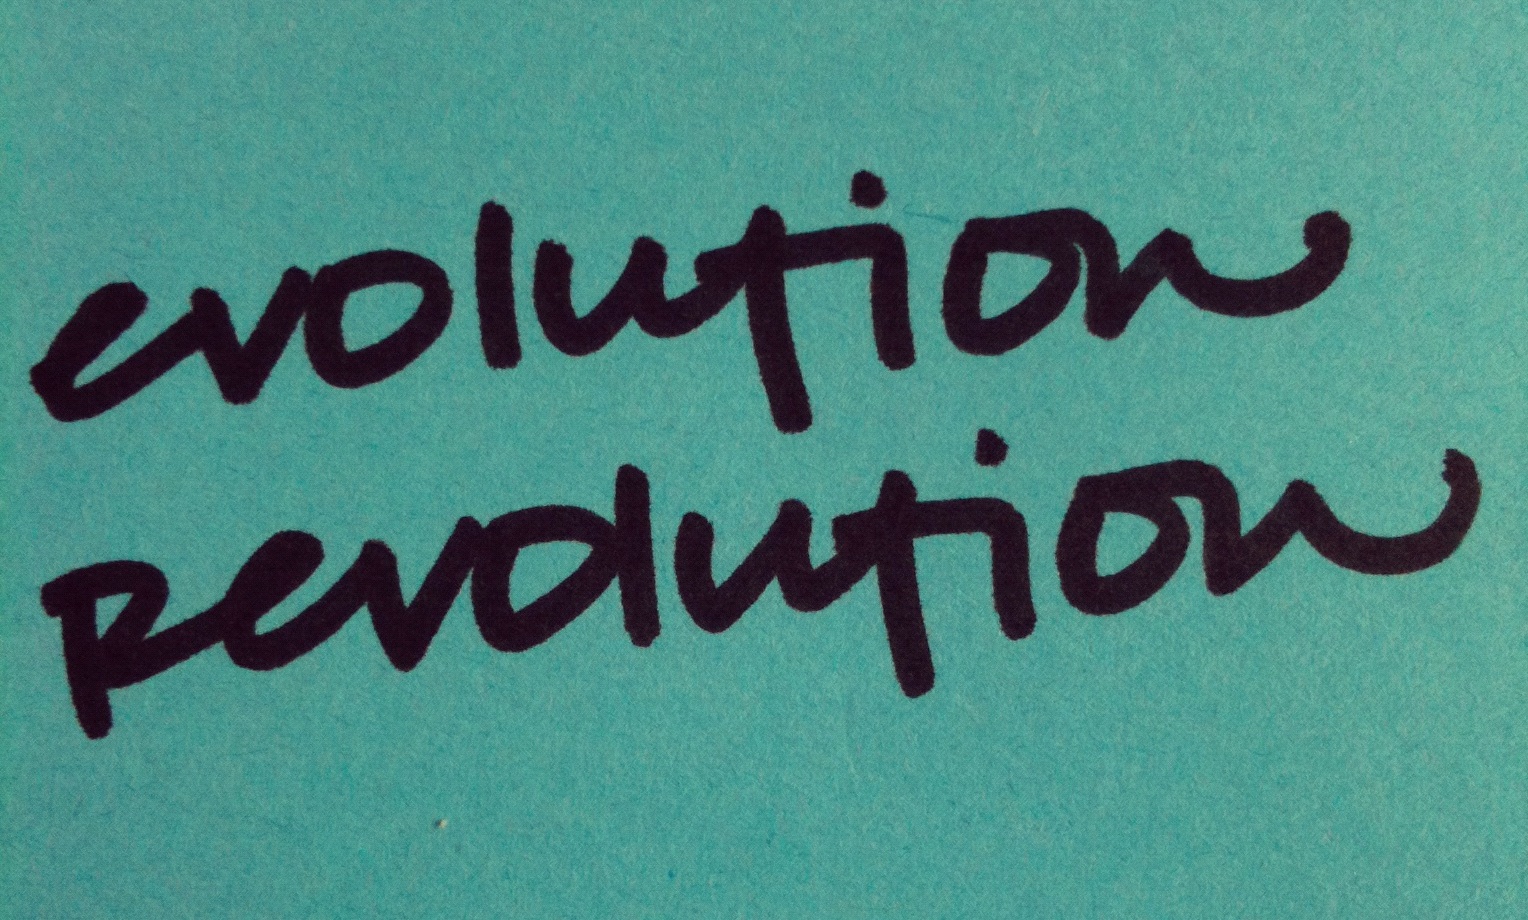 evolution-revolution.jpg